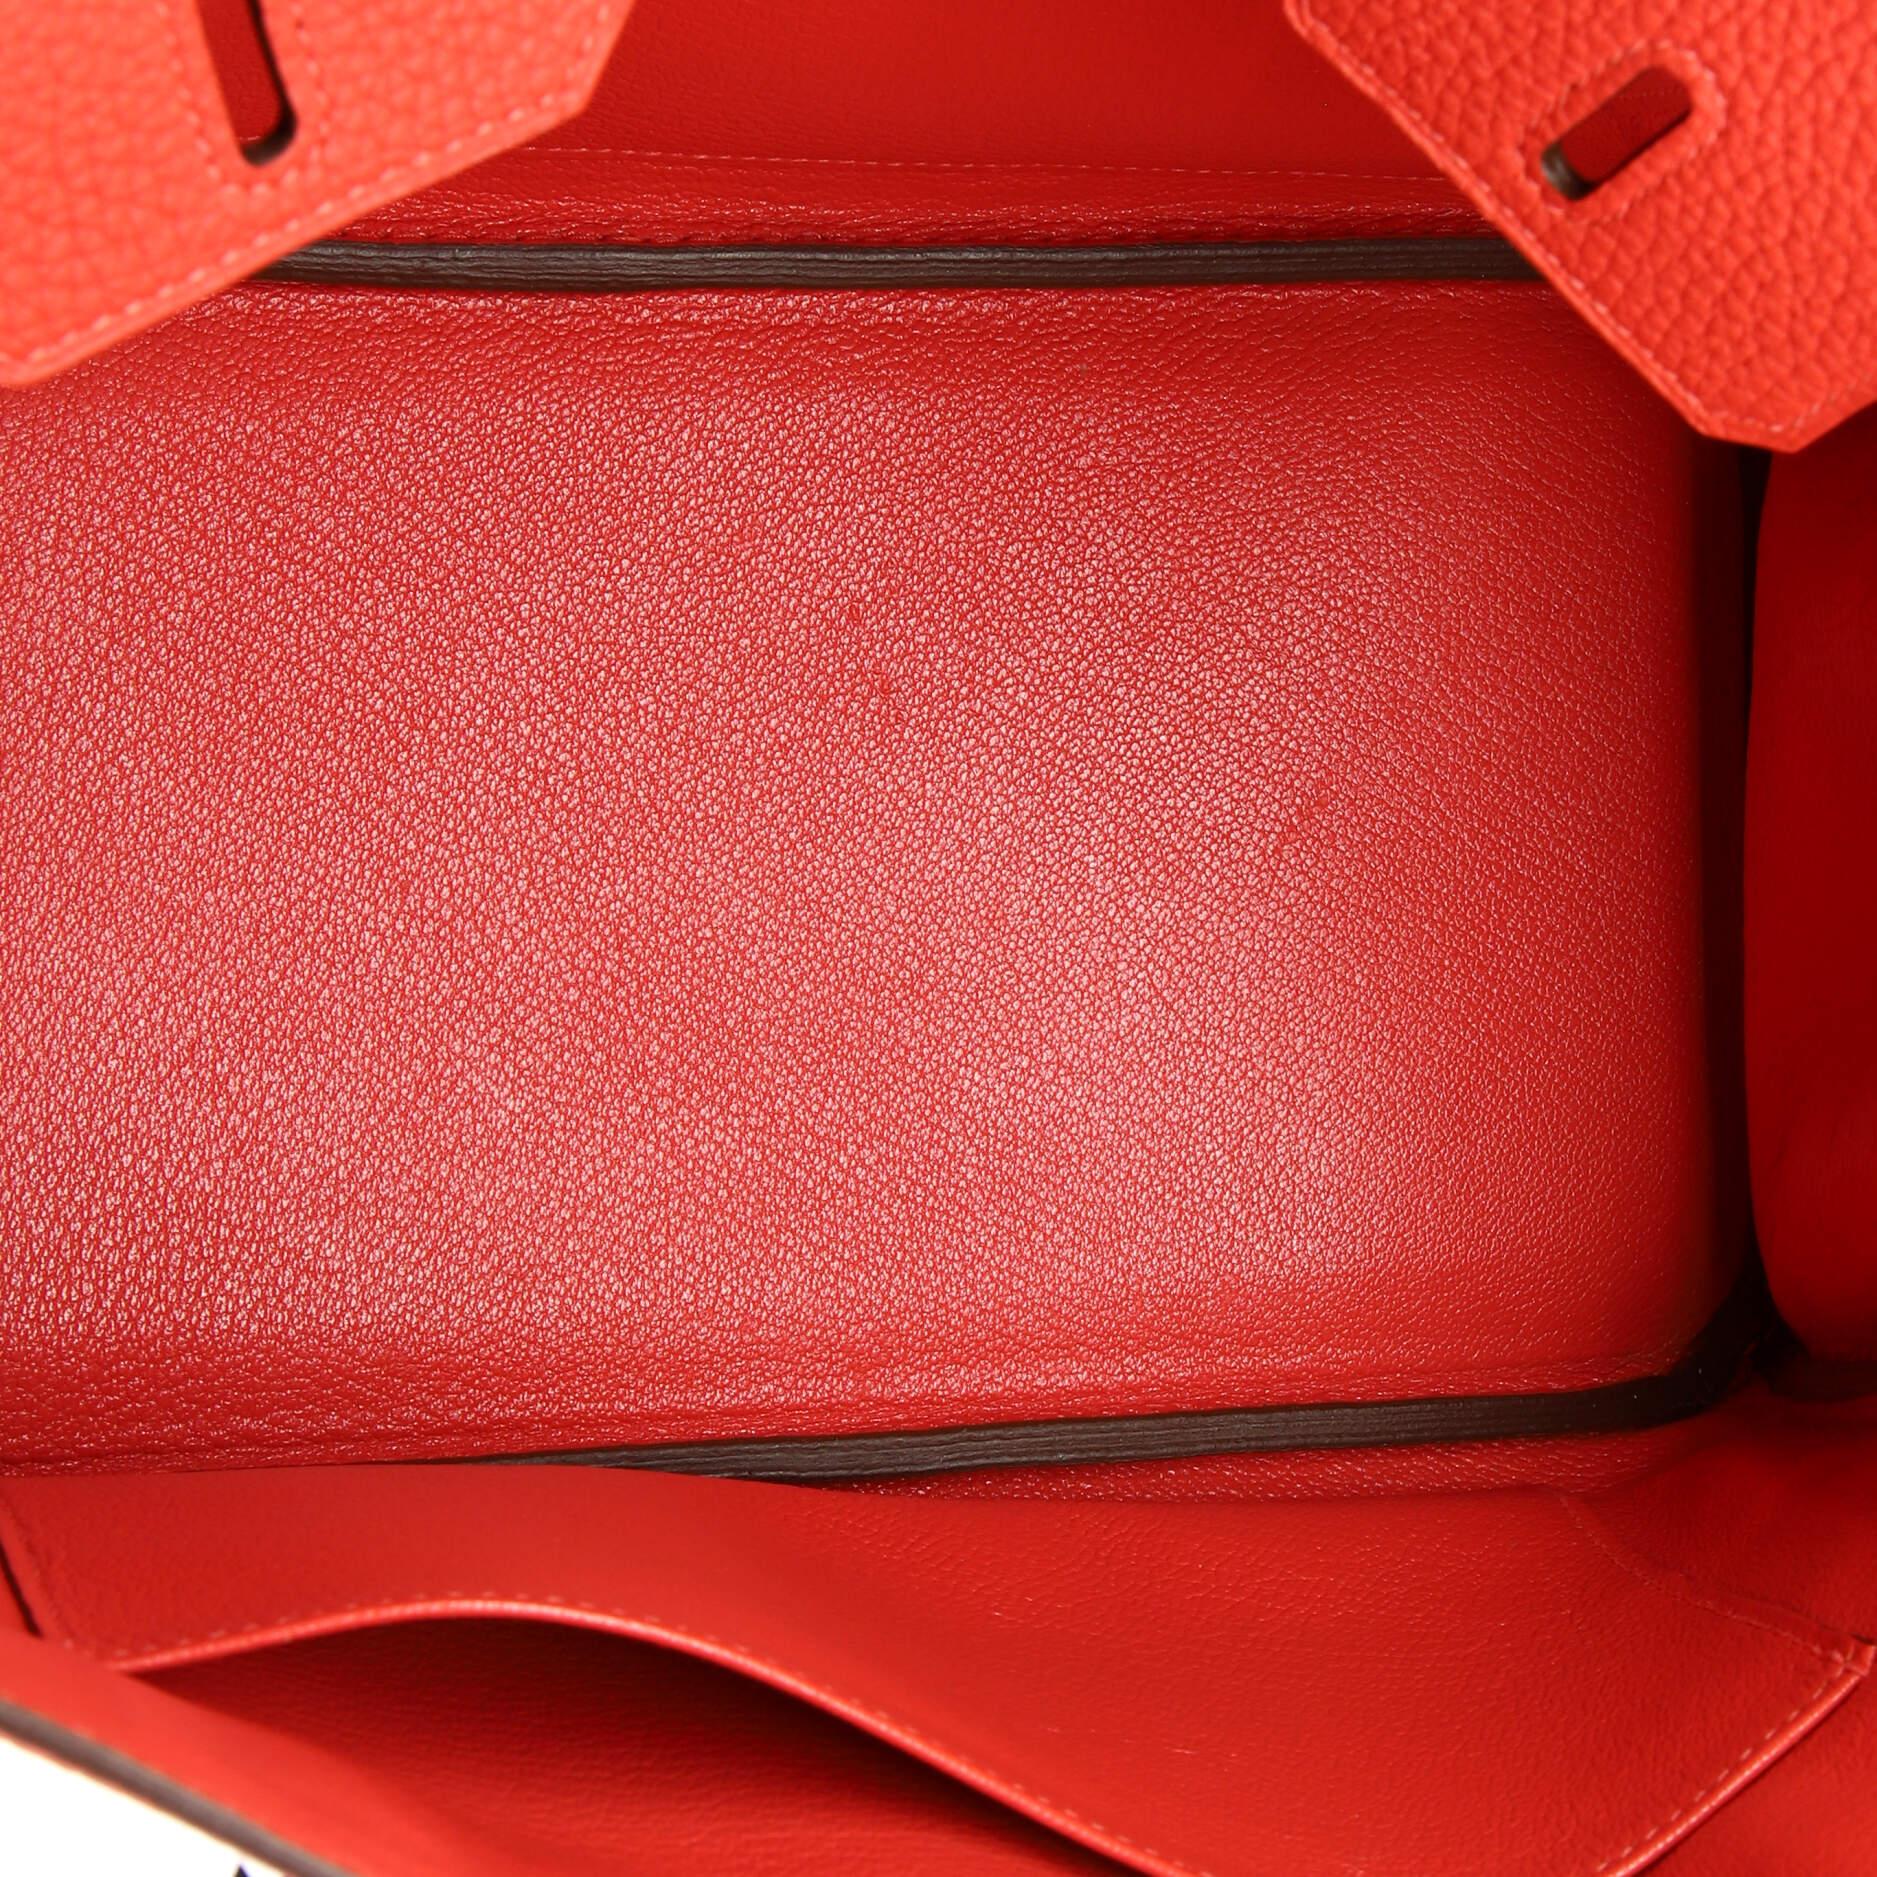 Hermes Birkin Handbag Rouge Pivoine Togo with Palladium Hardware 25 2